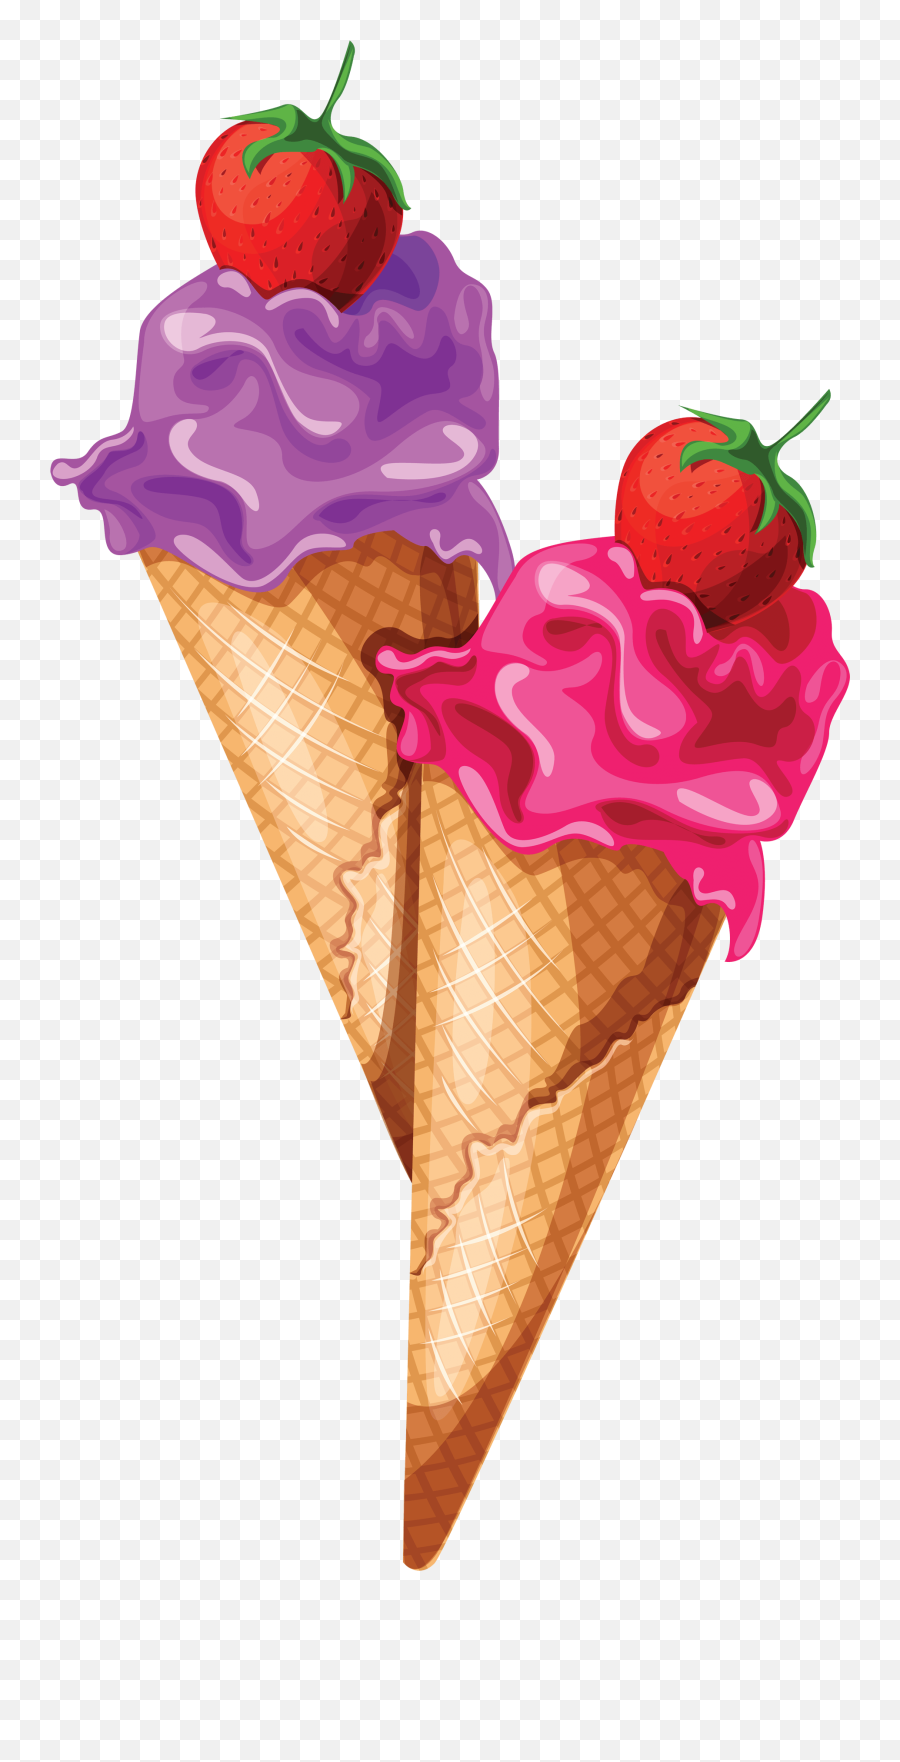 Ice Cream Png Image Png Image Ice Cream Art Ice Cream Emoji,Ice Cream Cone Transparent Background